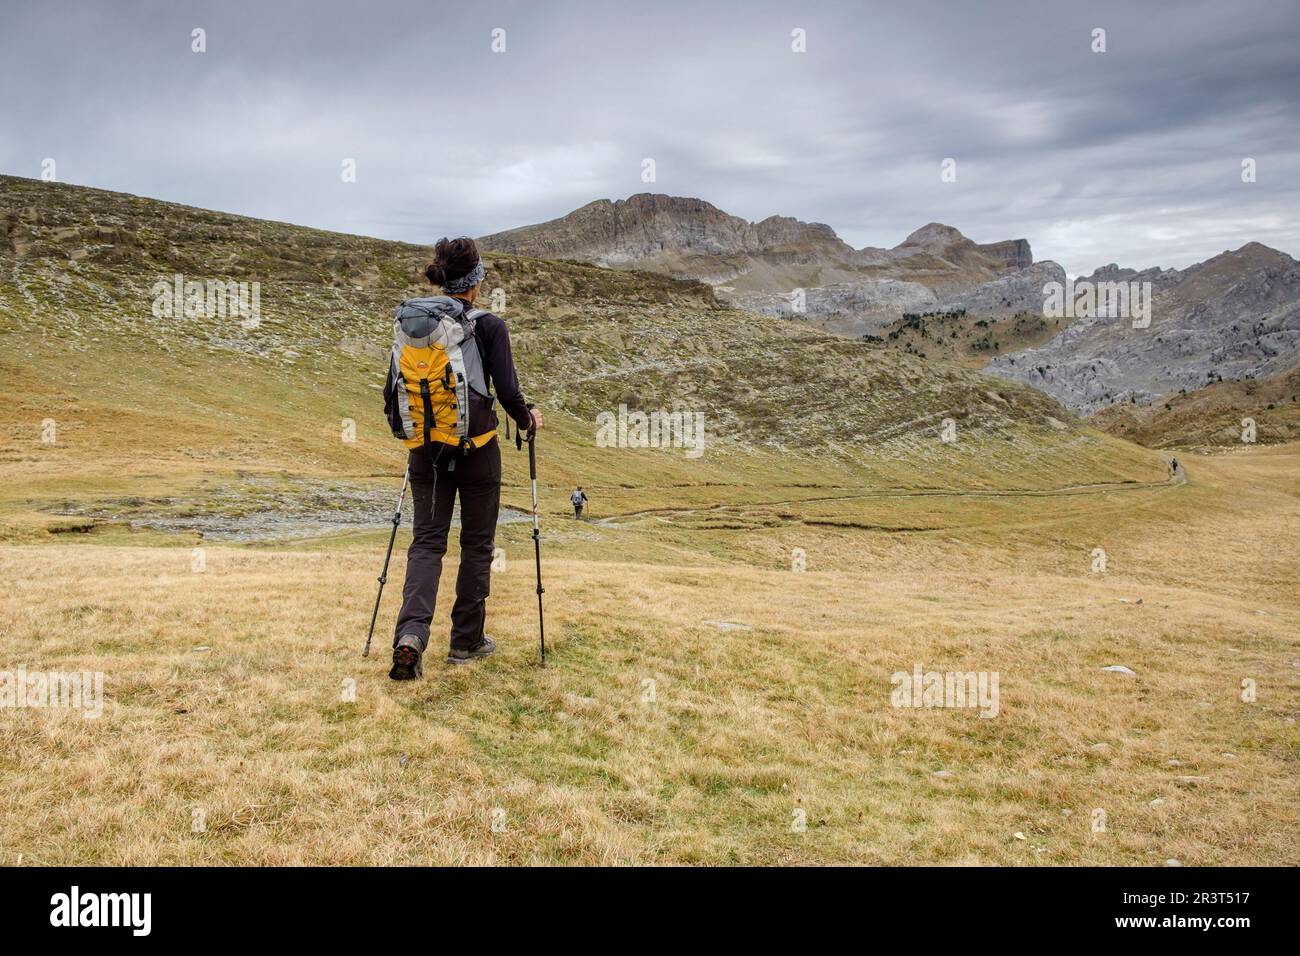 escursionistas, Linza, Parque natural de los Valles Occidentales, Huesca, cordillera de los pirineos, Spain, Europe. Stock Photo